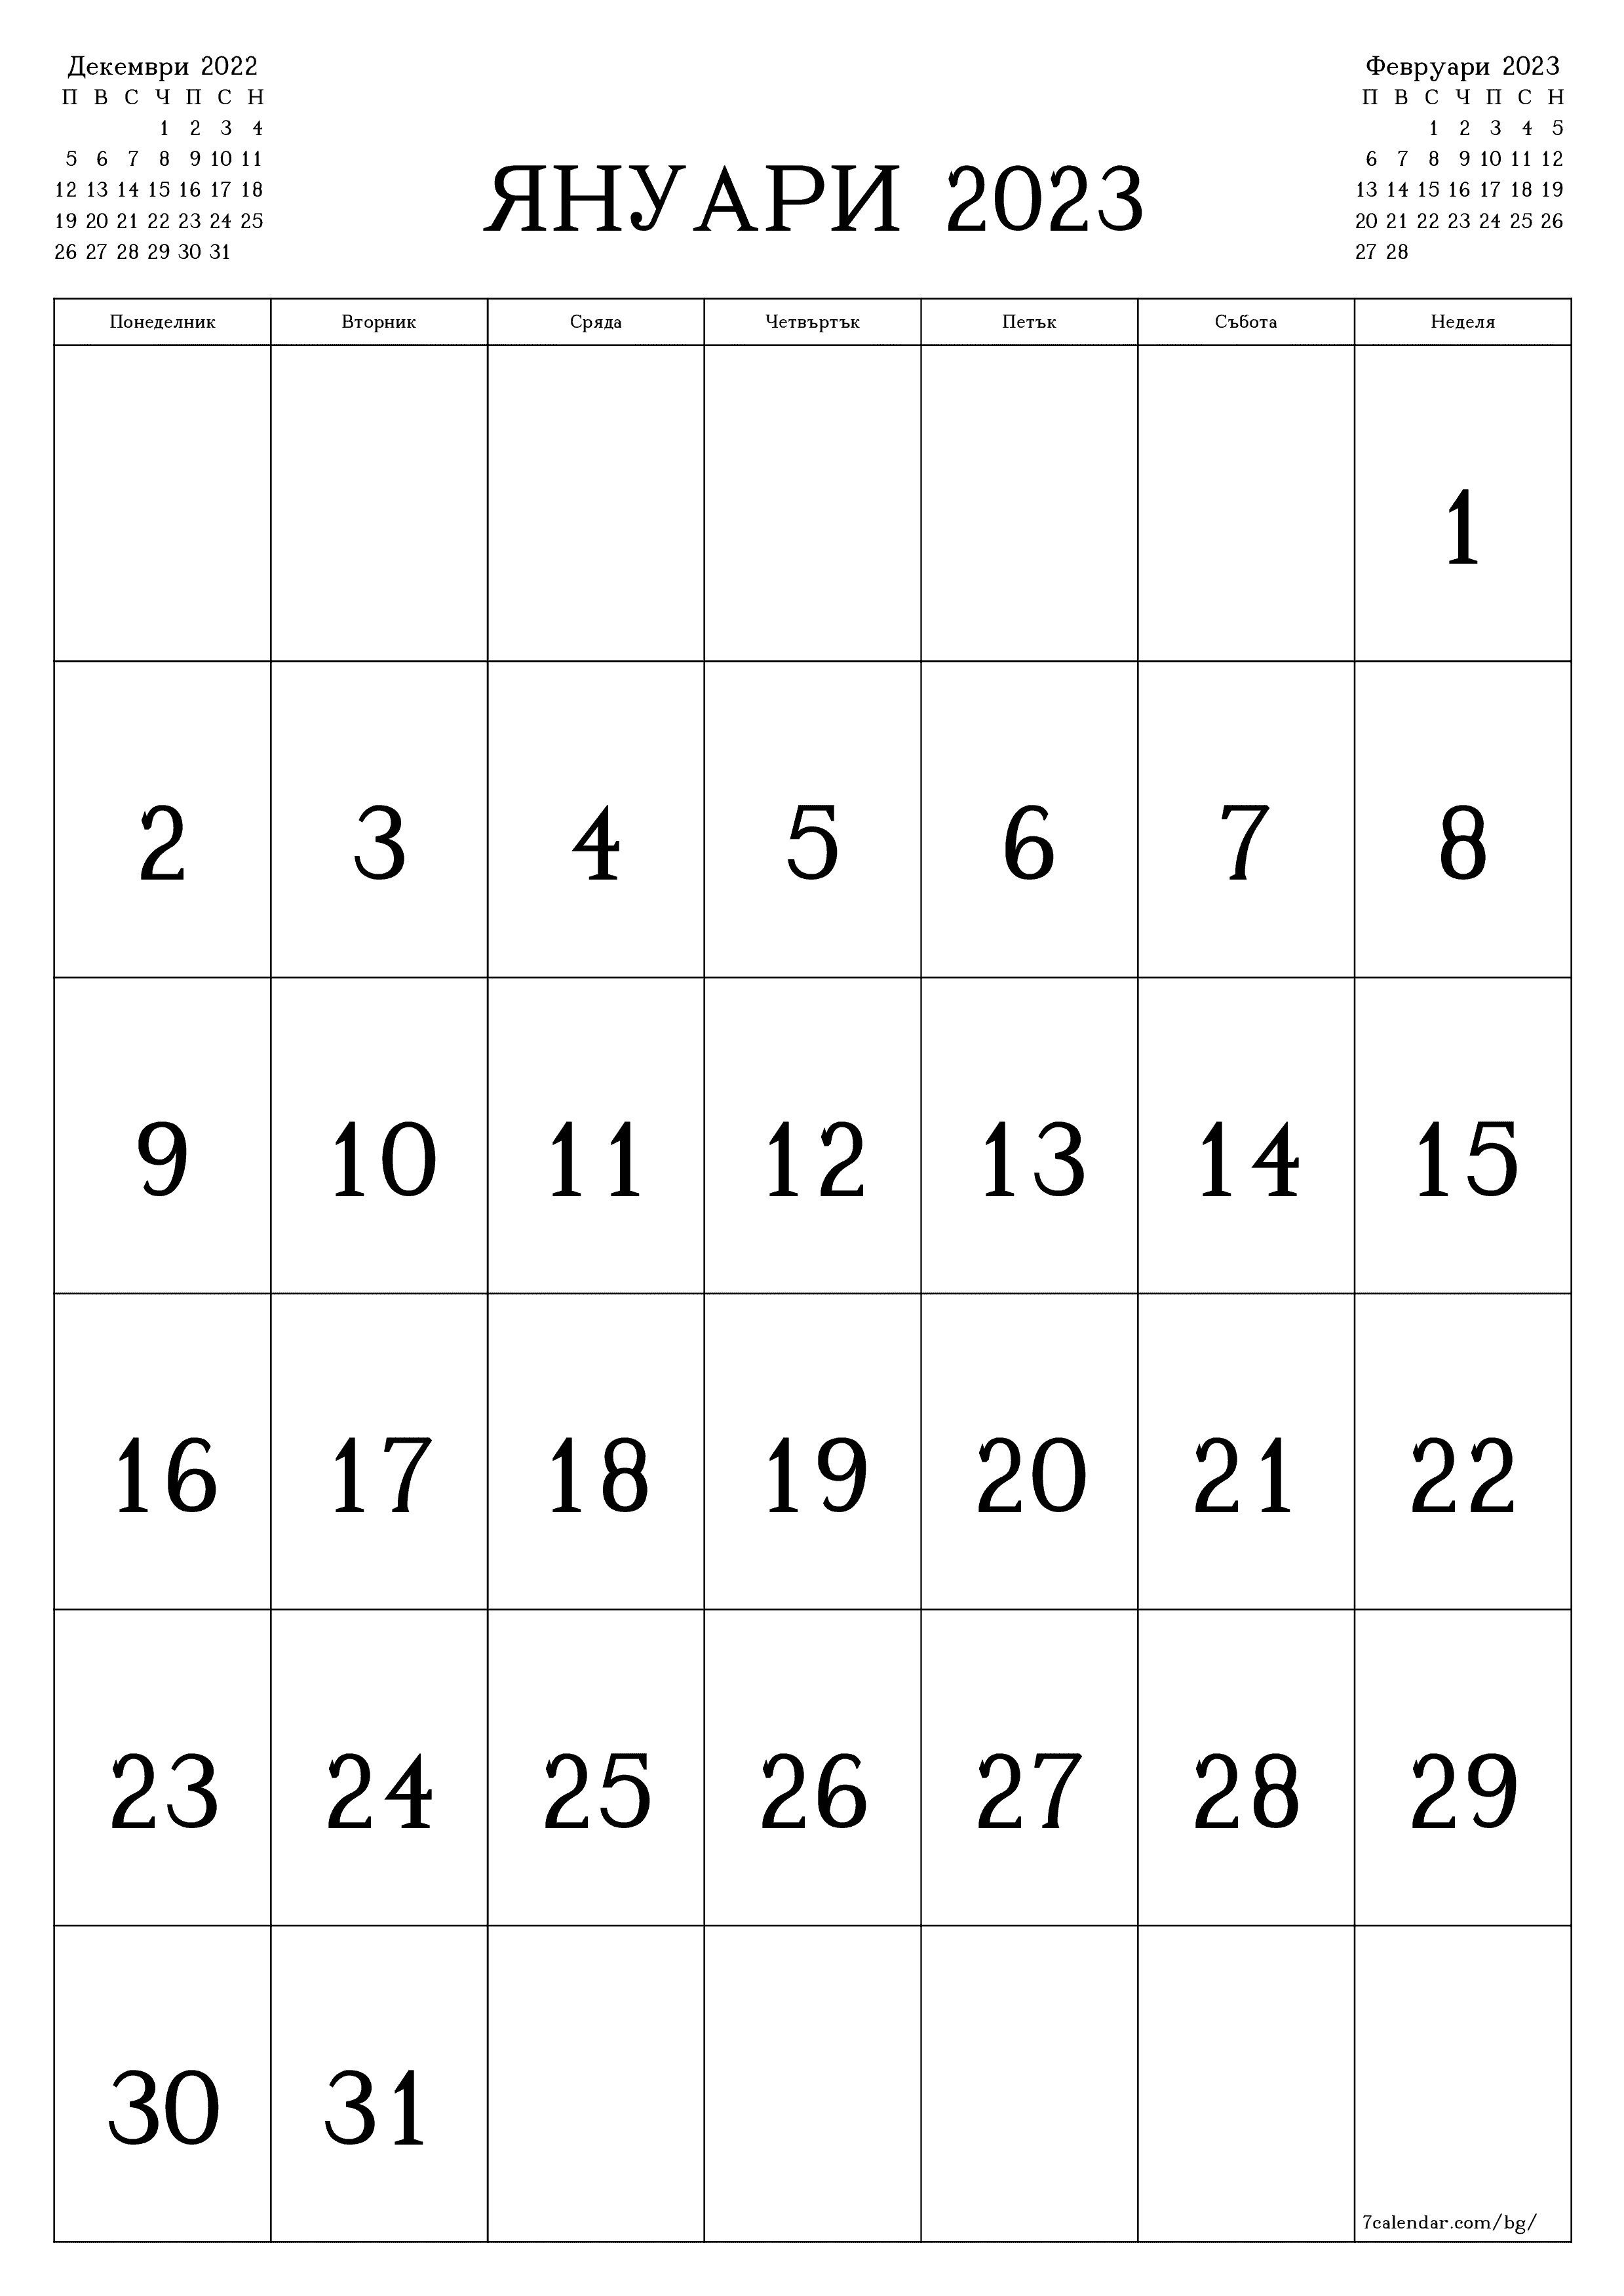 Празен месечен планер за месец Януари 2023 с бележки, запазете и отпечатайте в PDF PNG Bulgarian - 7calendar.com